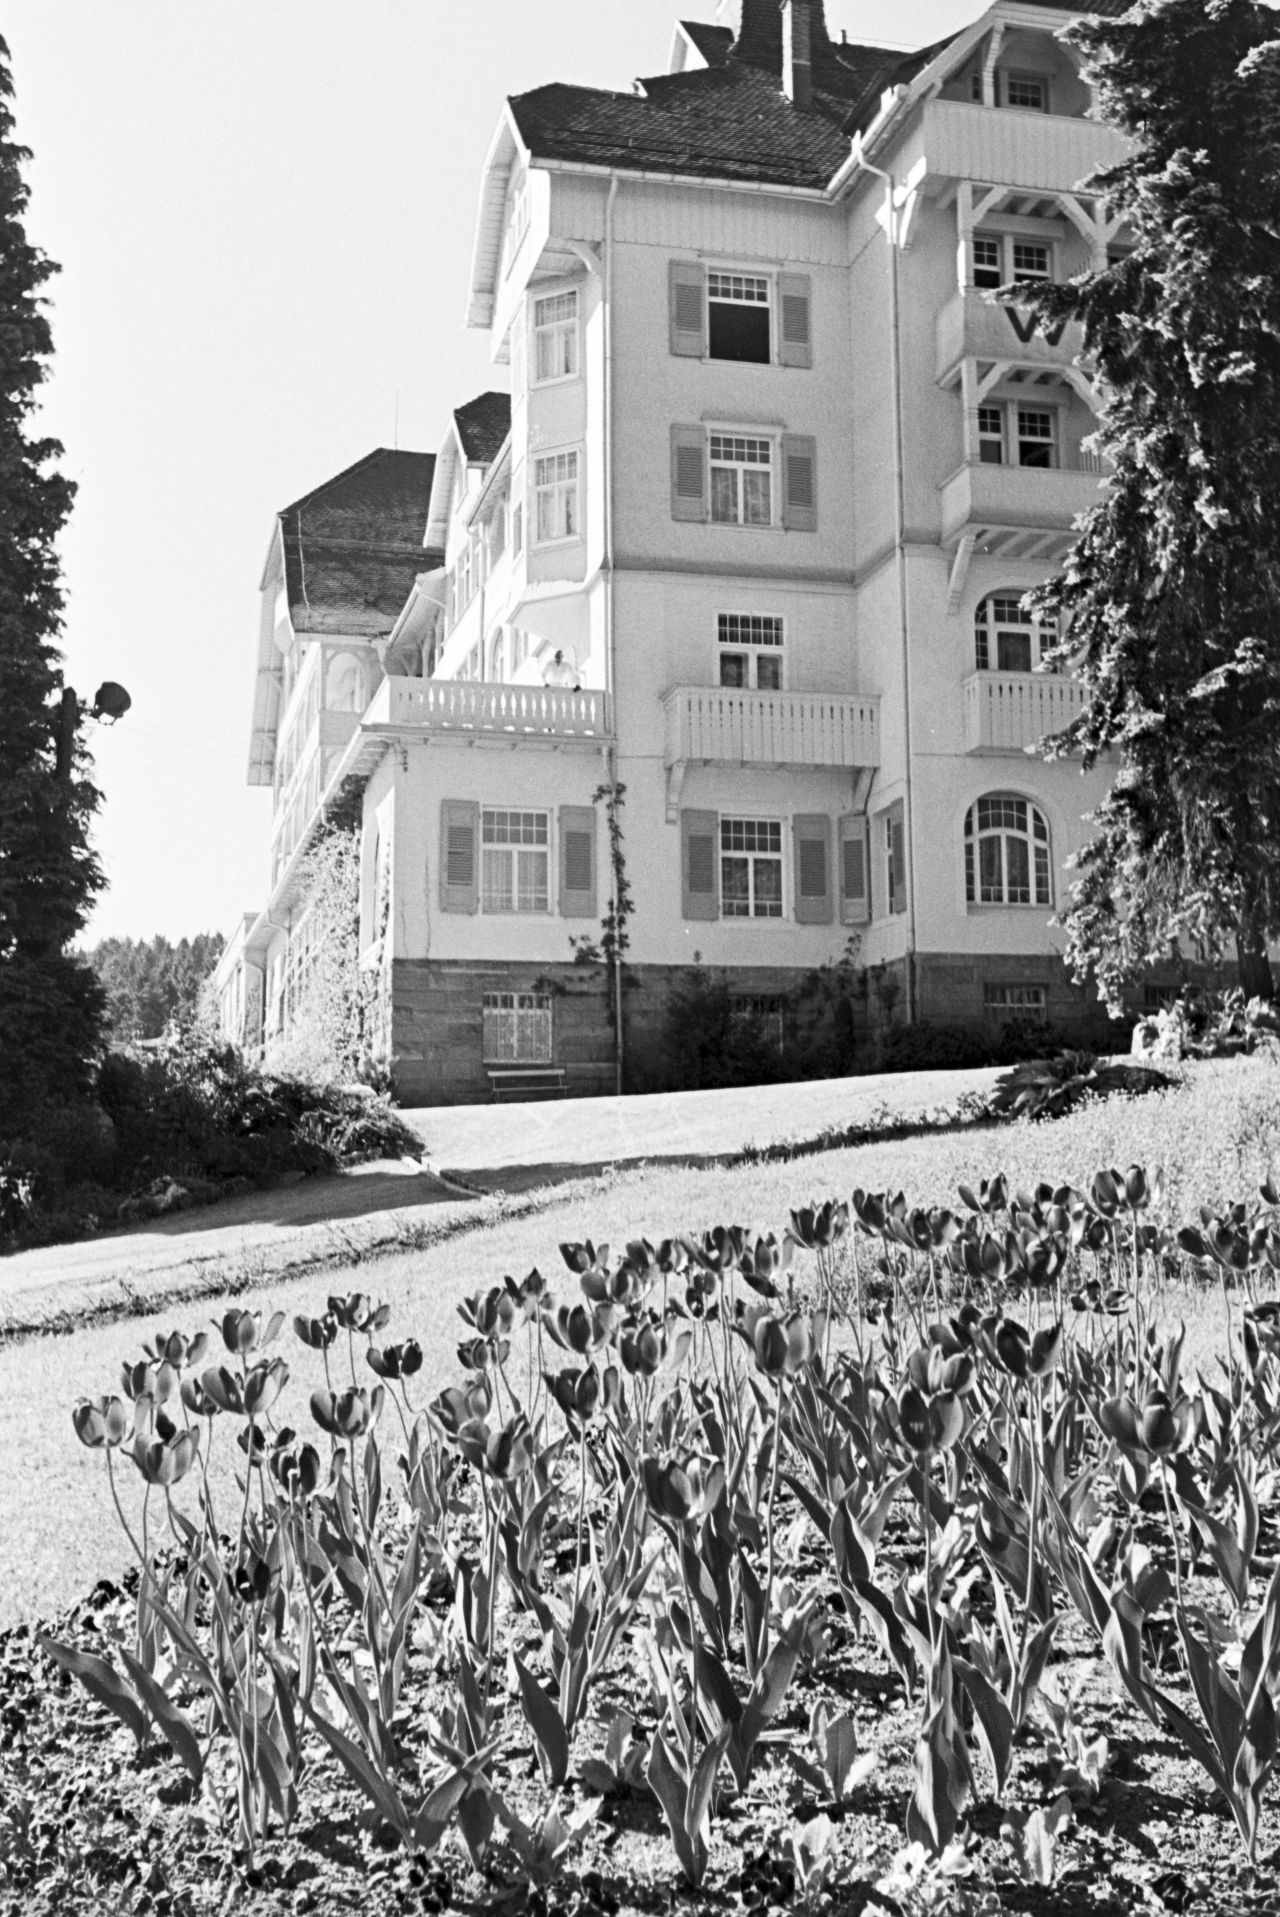 Im Schlosshotel Waldlust in Freudenstadt residierten einst Fürsten, Könige, Sultane. Nach dem Zweiten Weltkrieg wurde das Nobel-Domizil zum Lazarett, danach gab es einige Besitzerwechsel, seit 2005 steht es leer. Schon in den 1960ern sprachen Angestellte davon, dass das Hotel ein Ort "unerlöster Seelen" sei und es dort spuken würde. 